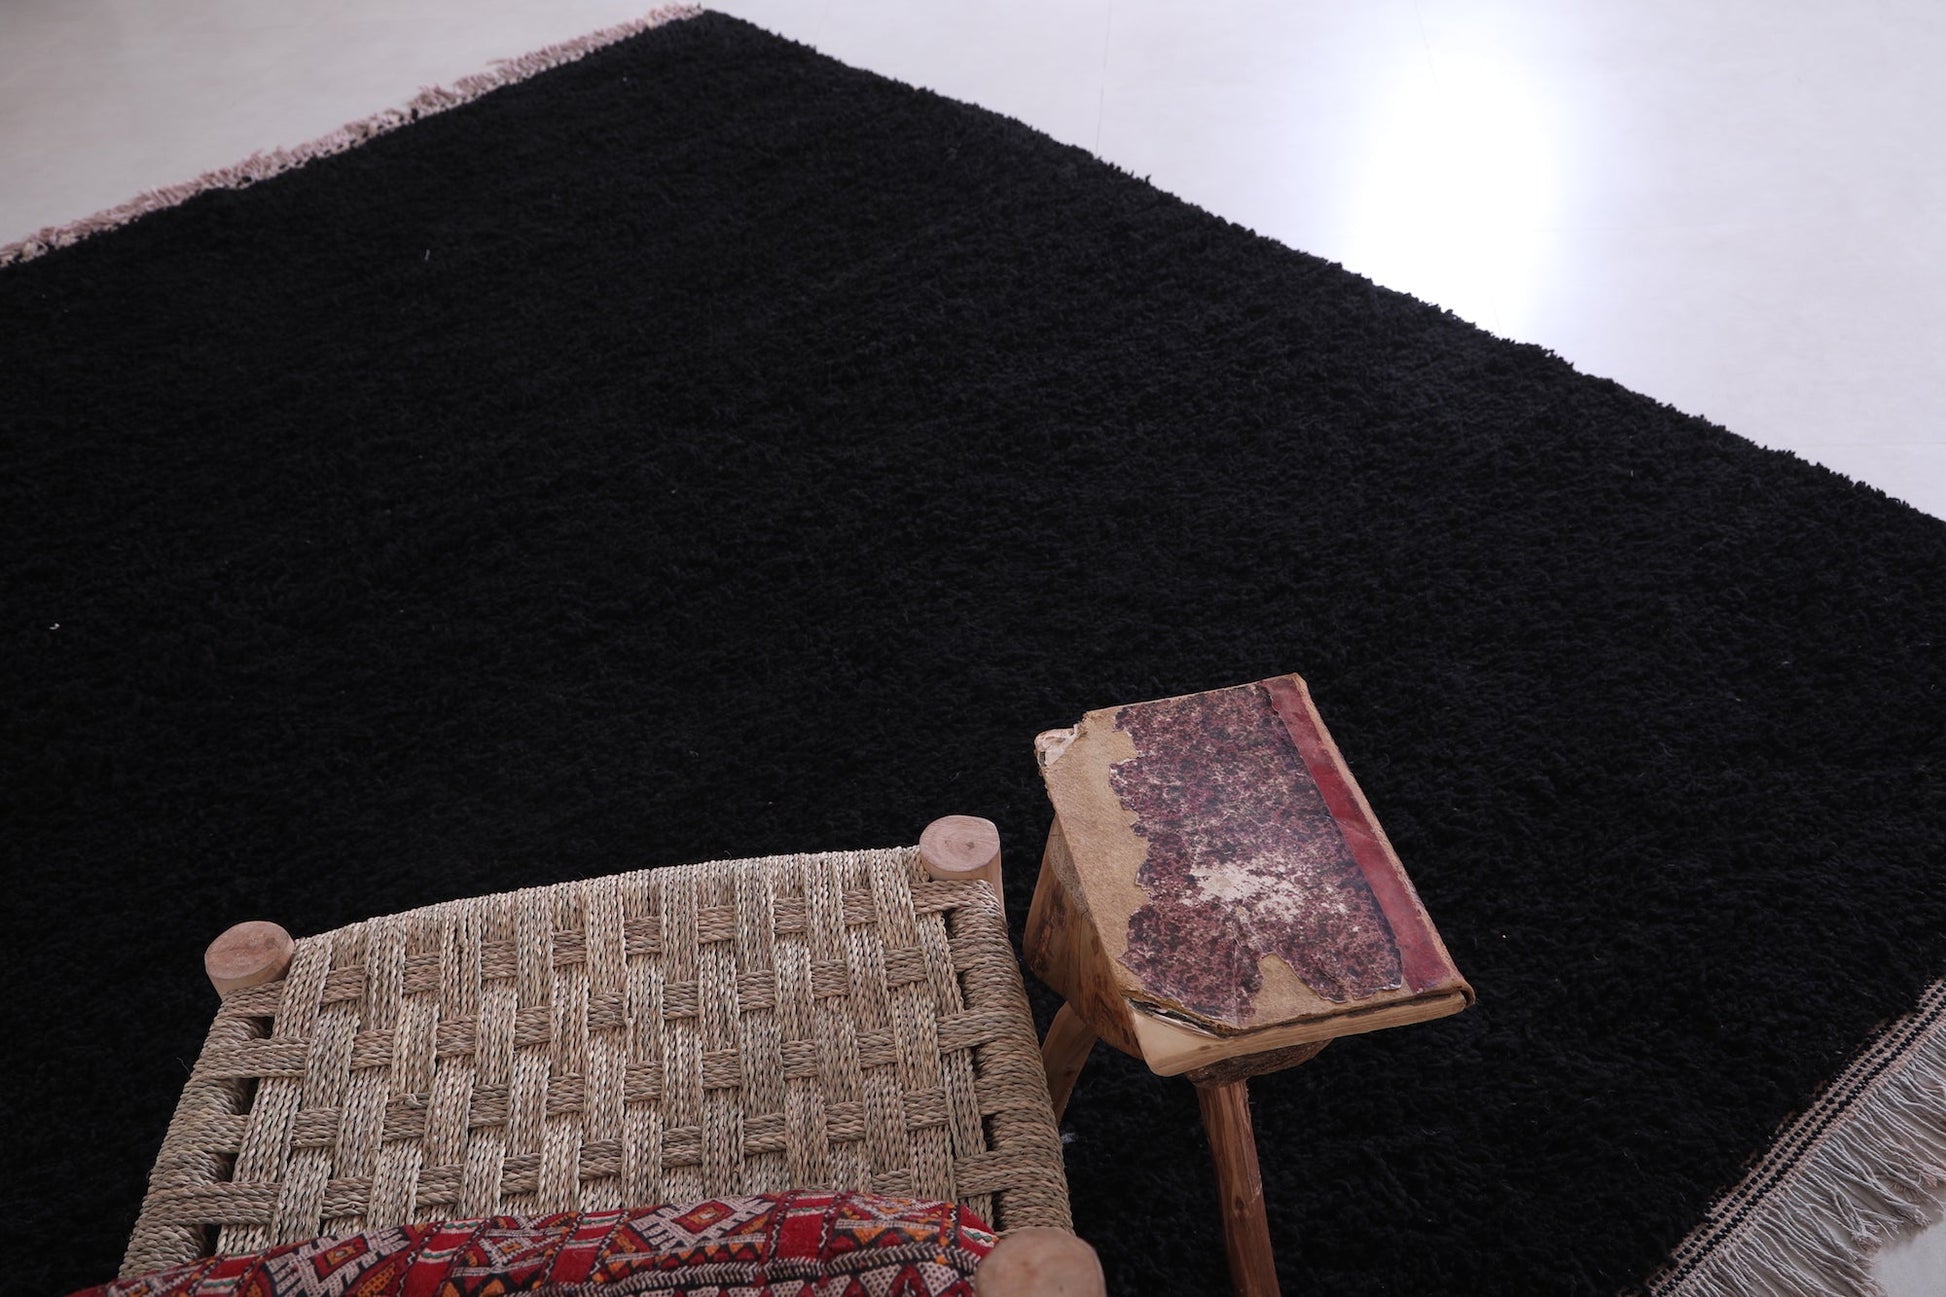 Custom Moroccan rug, Berber handmade black carpet